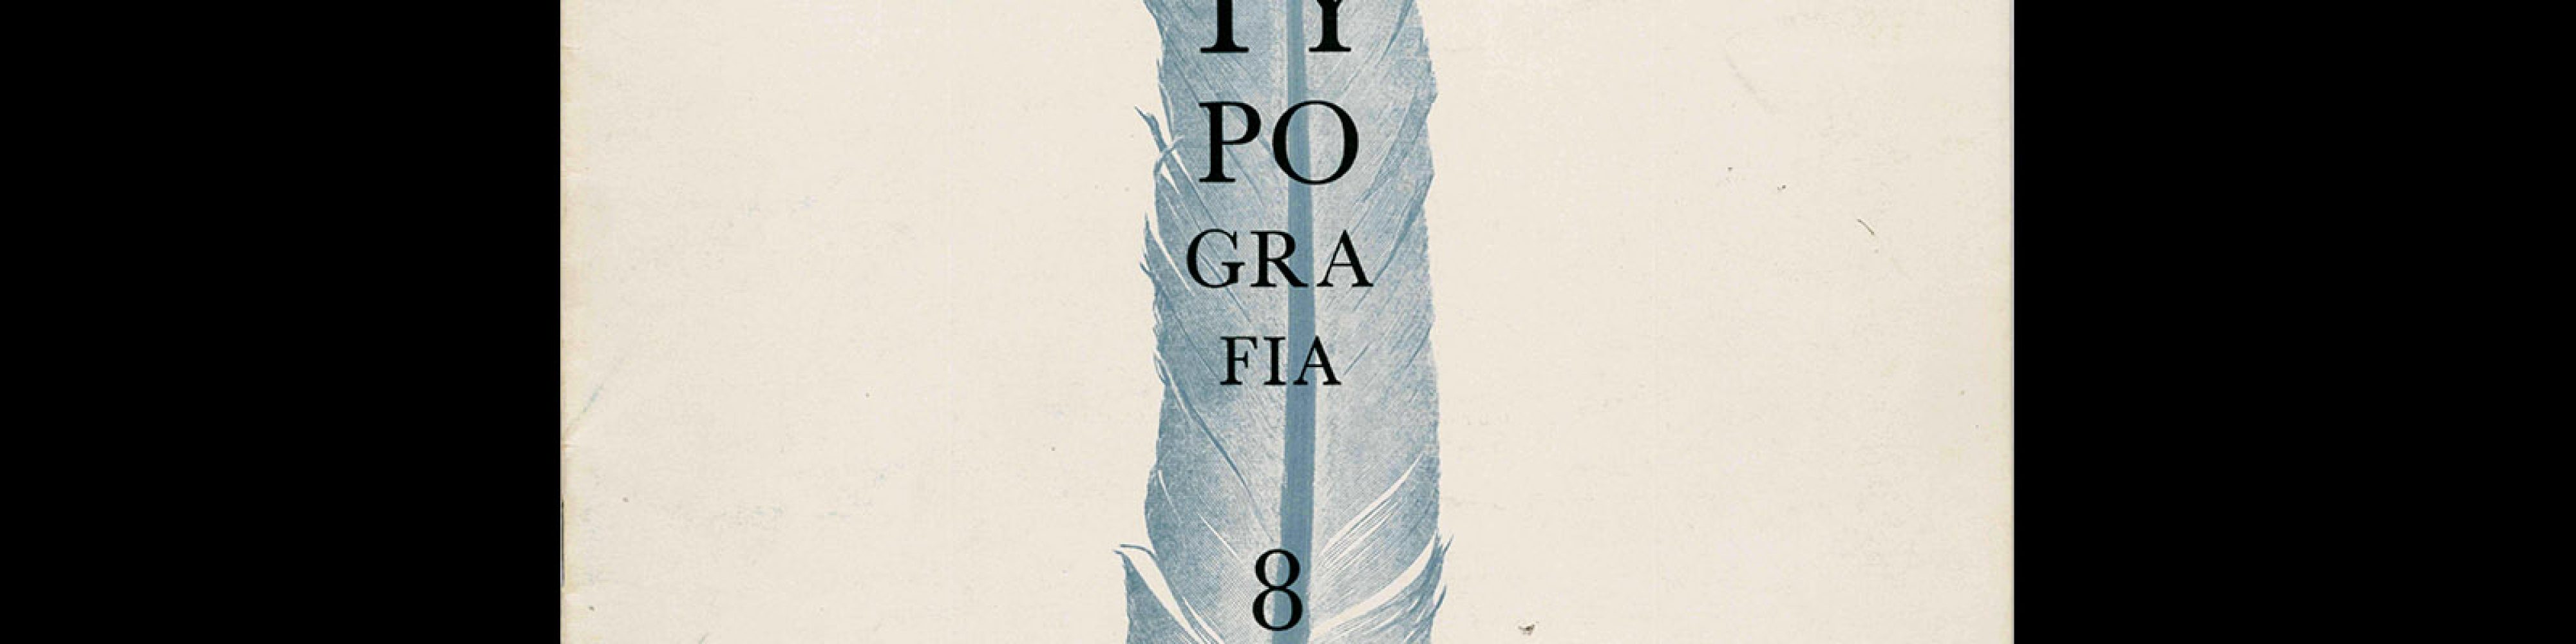 Typografia, ročník 56, 08, 1953. Cover design by Vladimír Janský